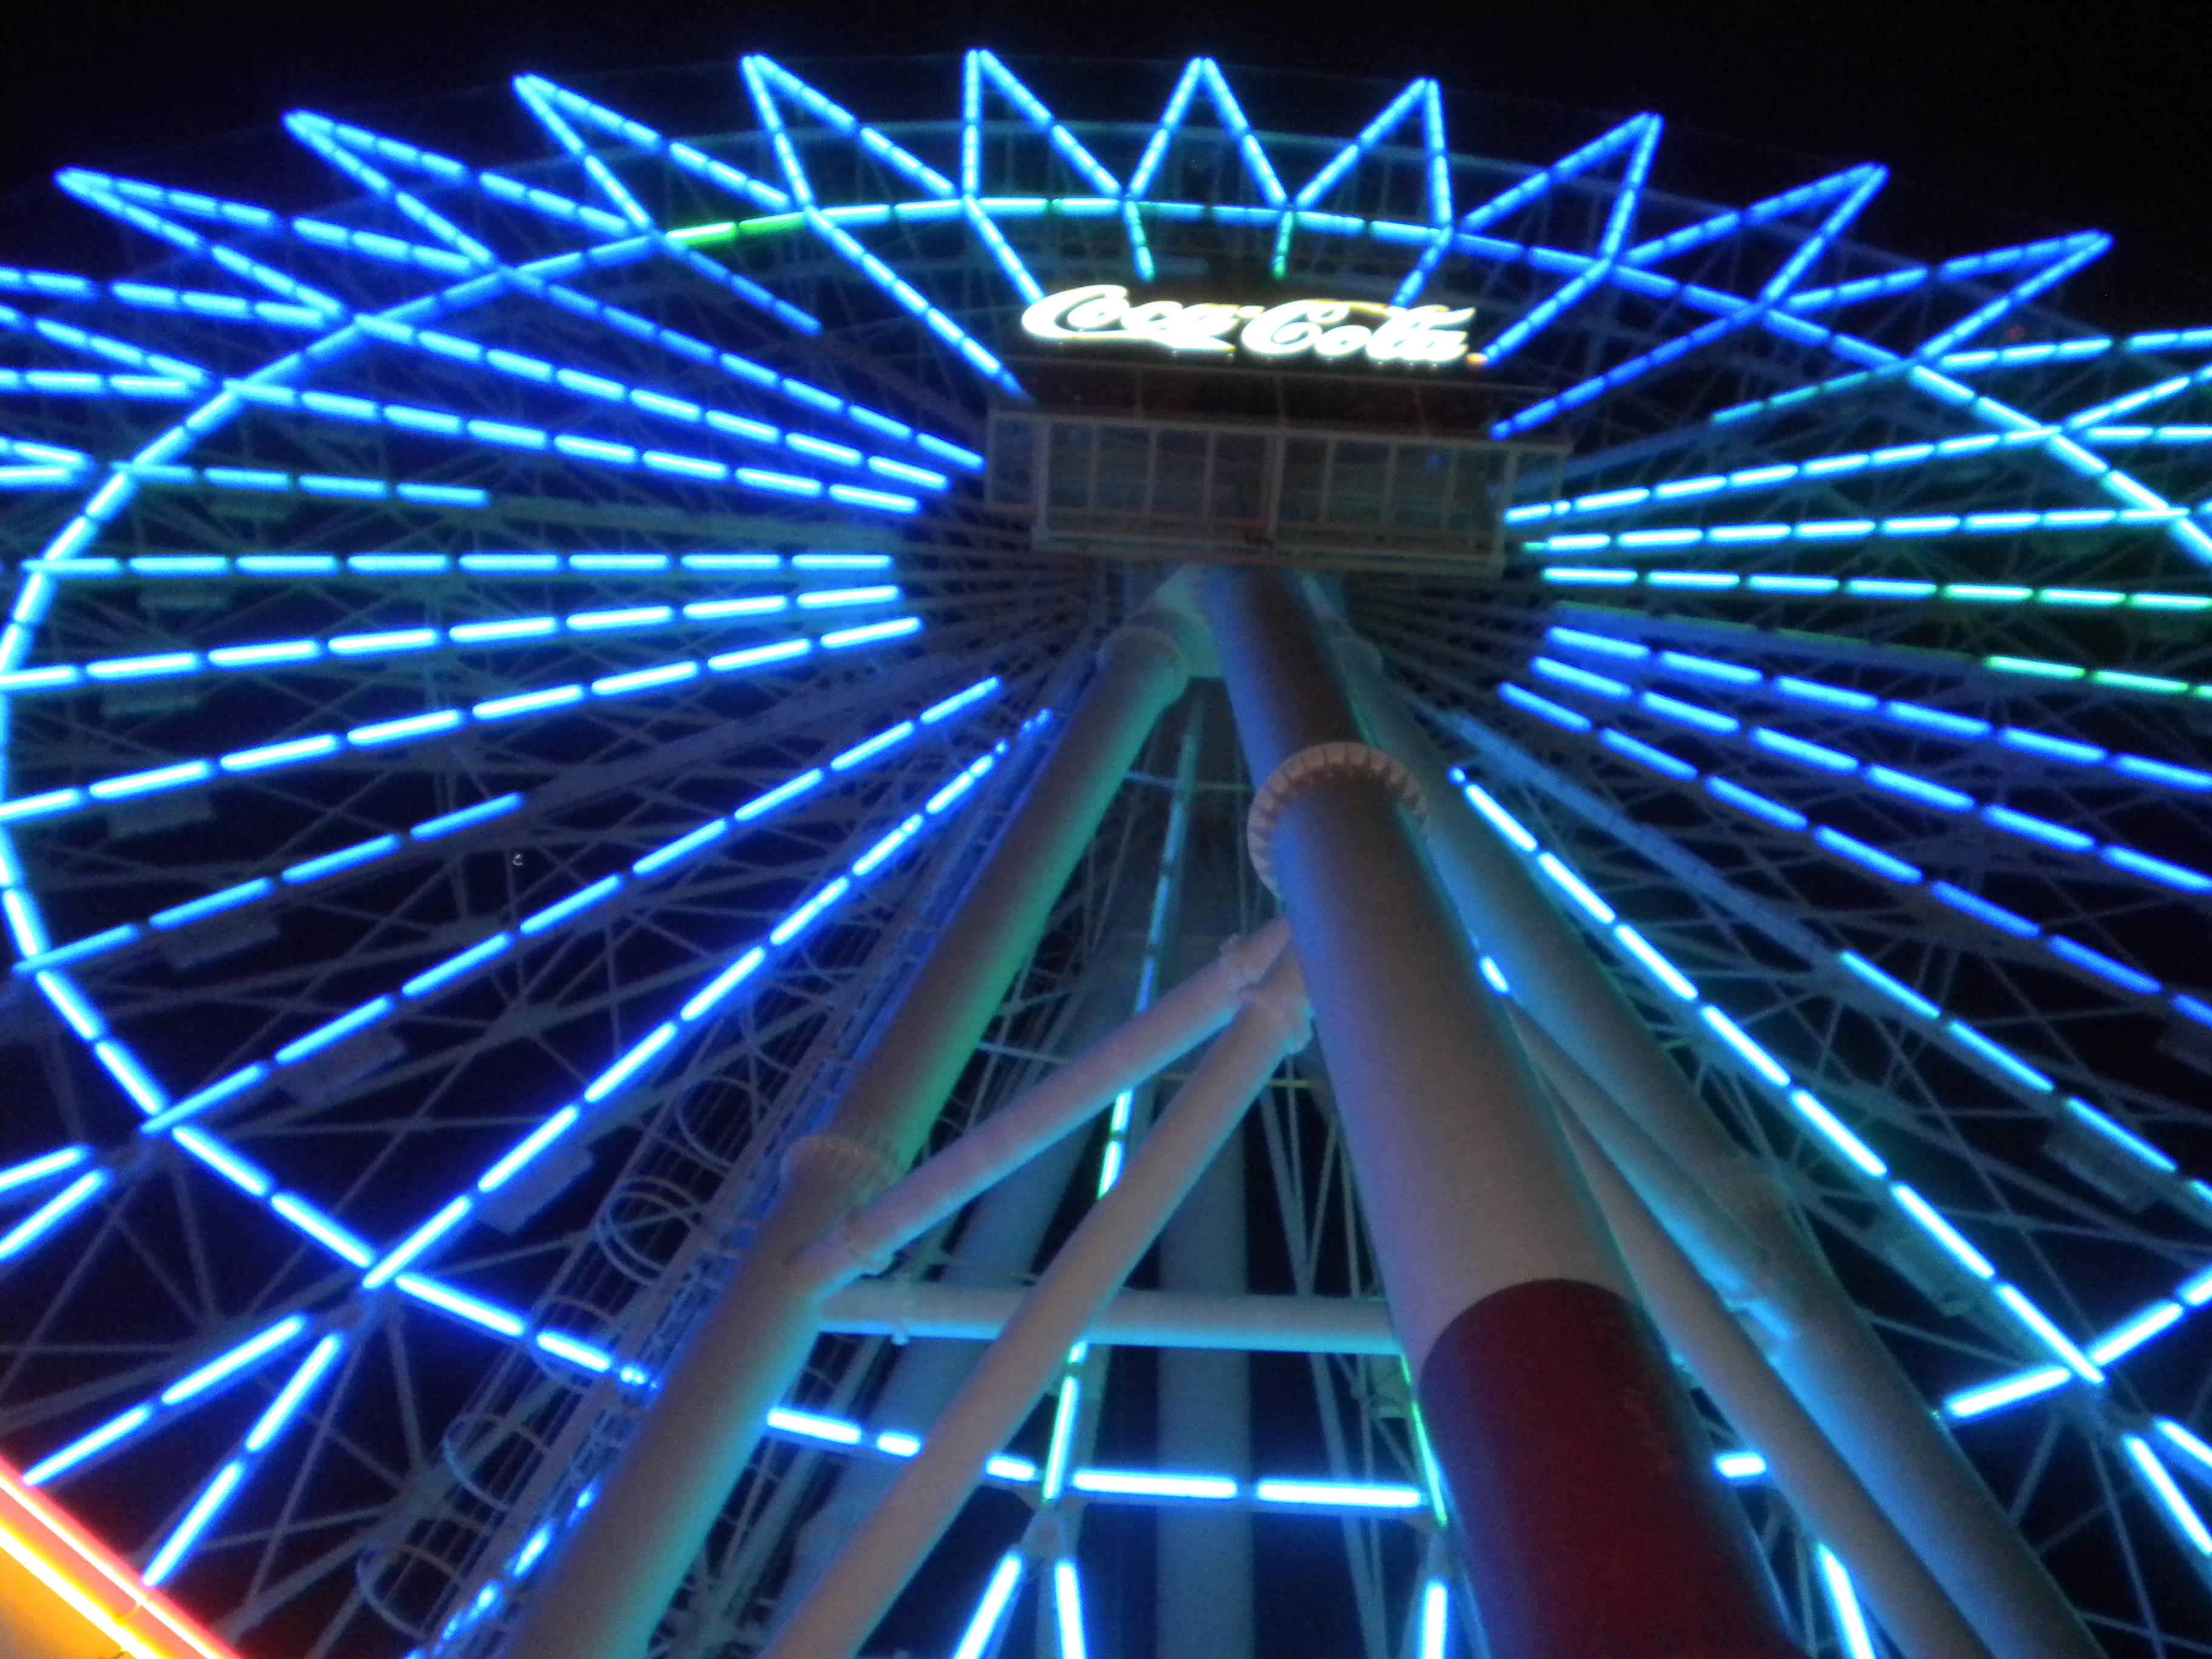 Ferris Wheel in Okinawa